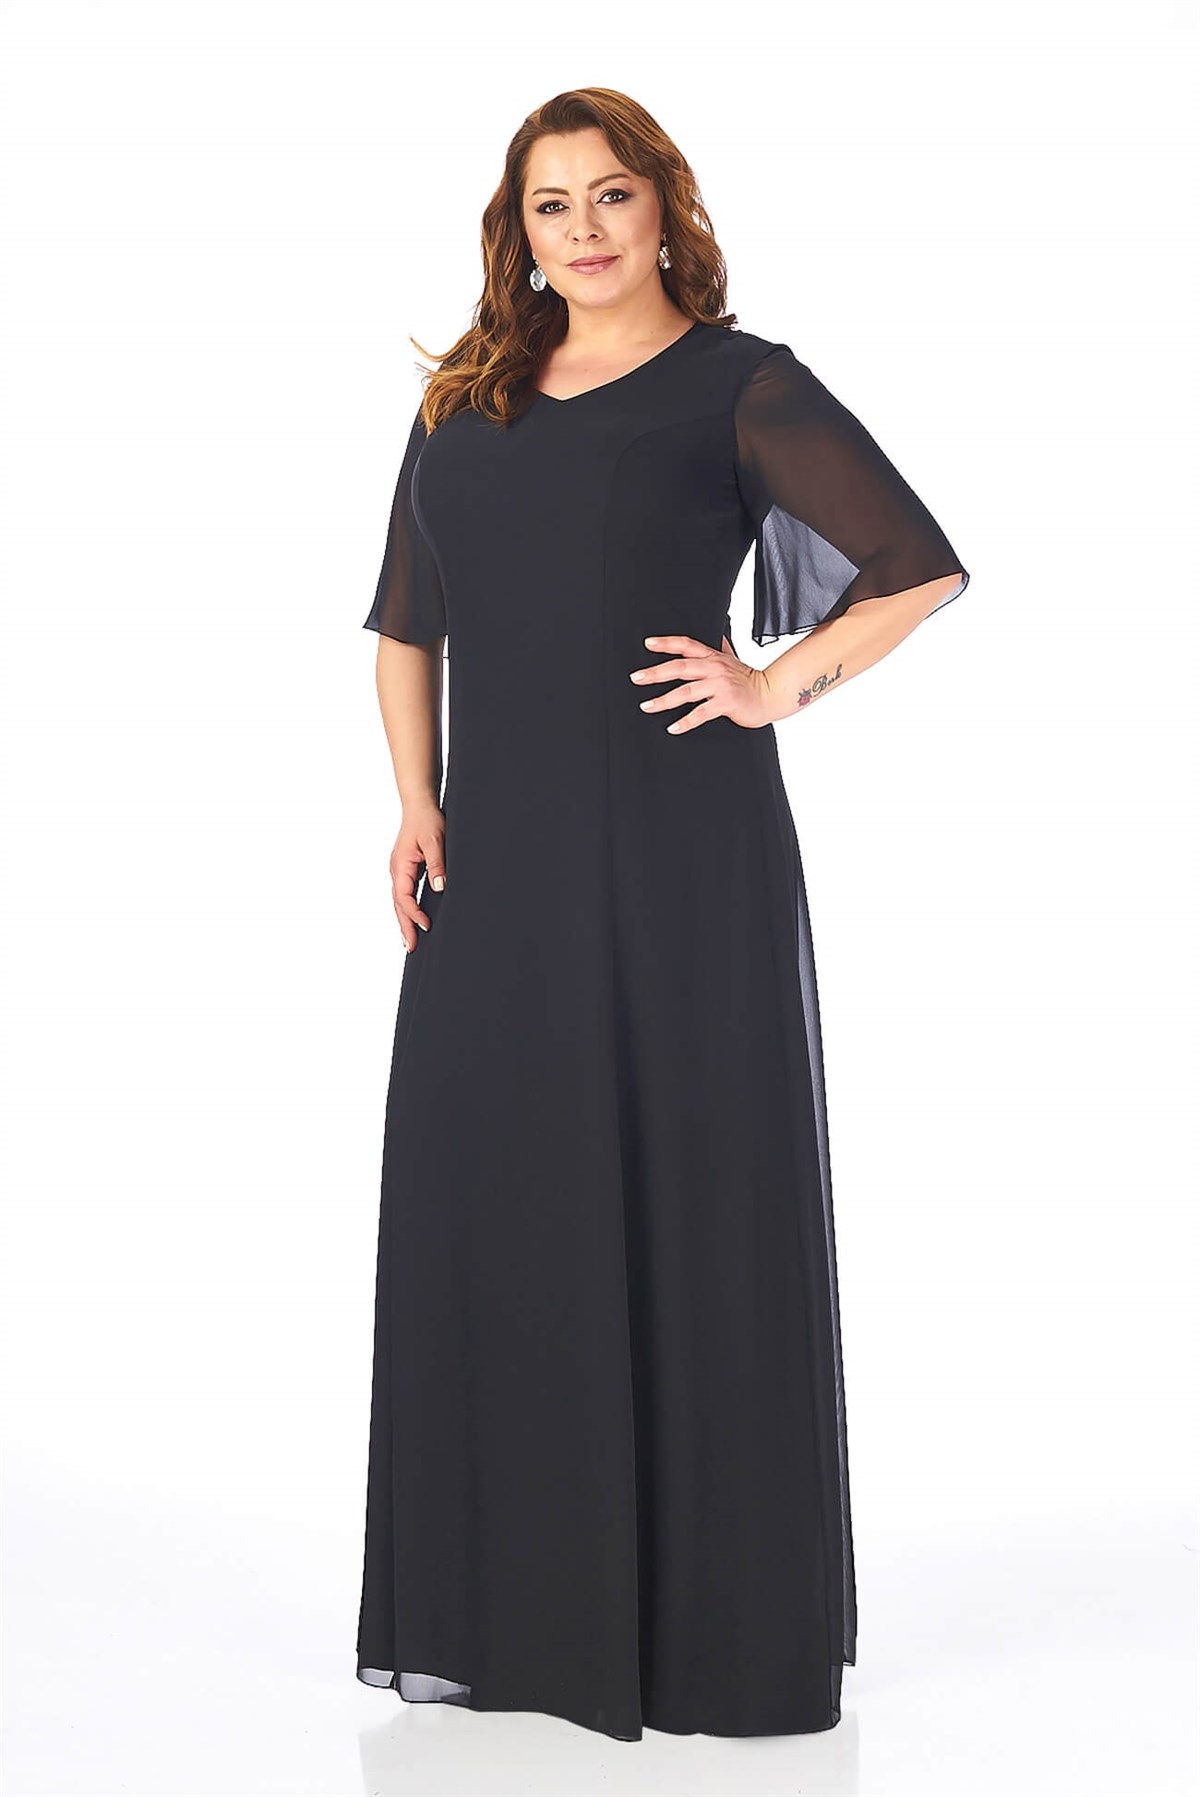 Büyük Beden Siyah Renkli Uzun Şifon Abiye Elbise